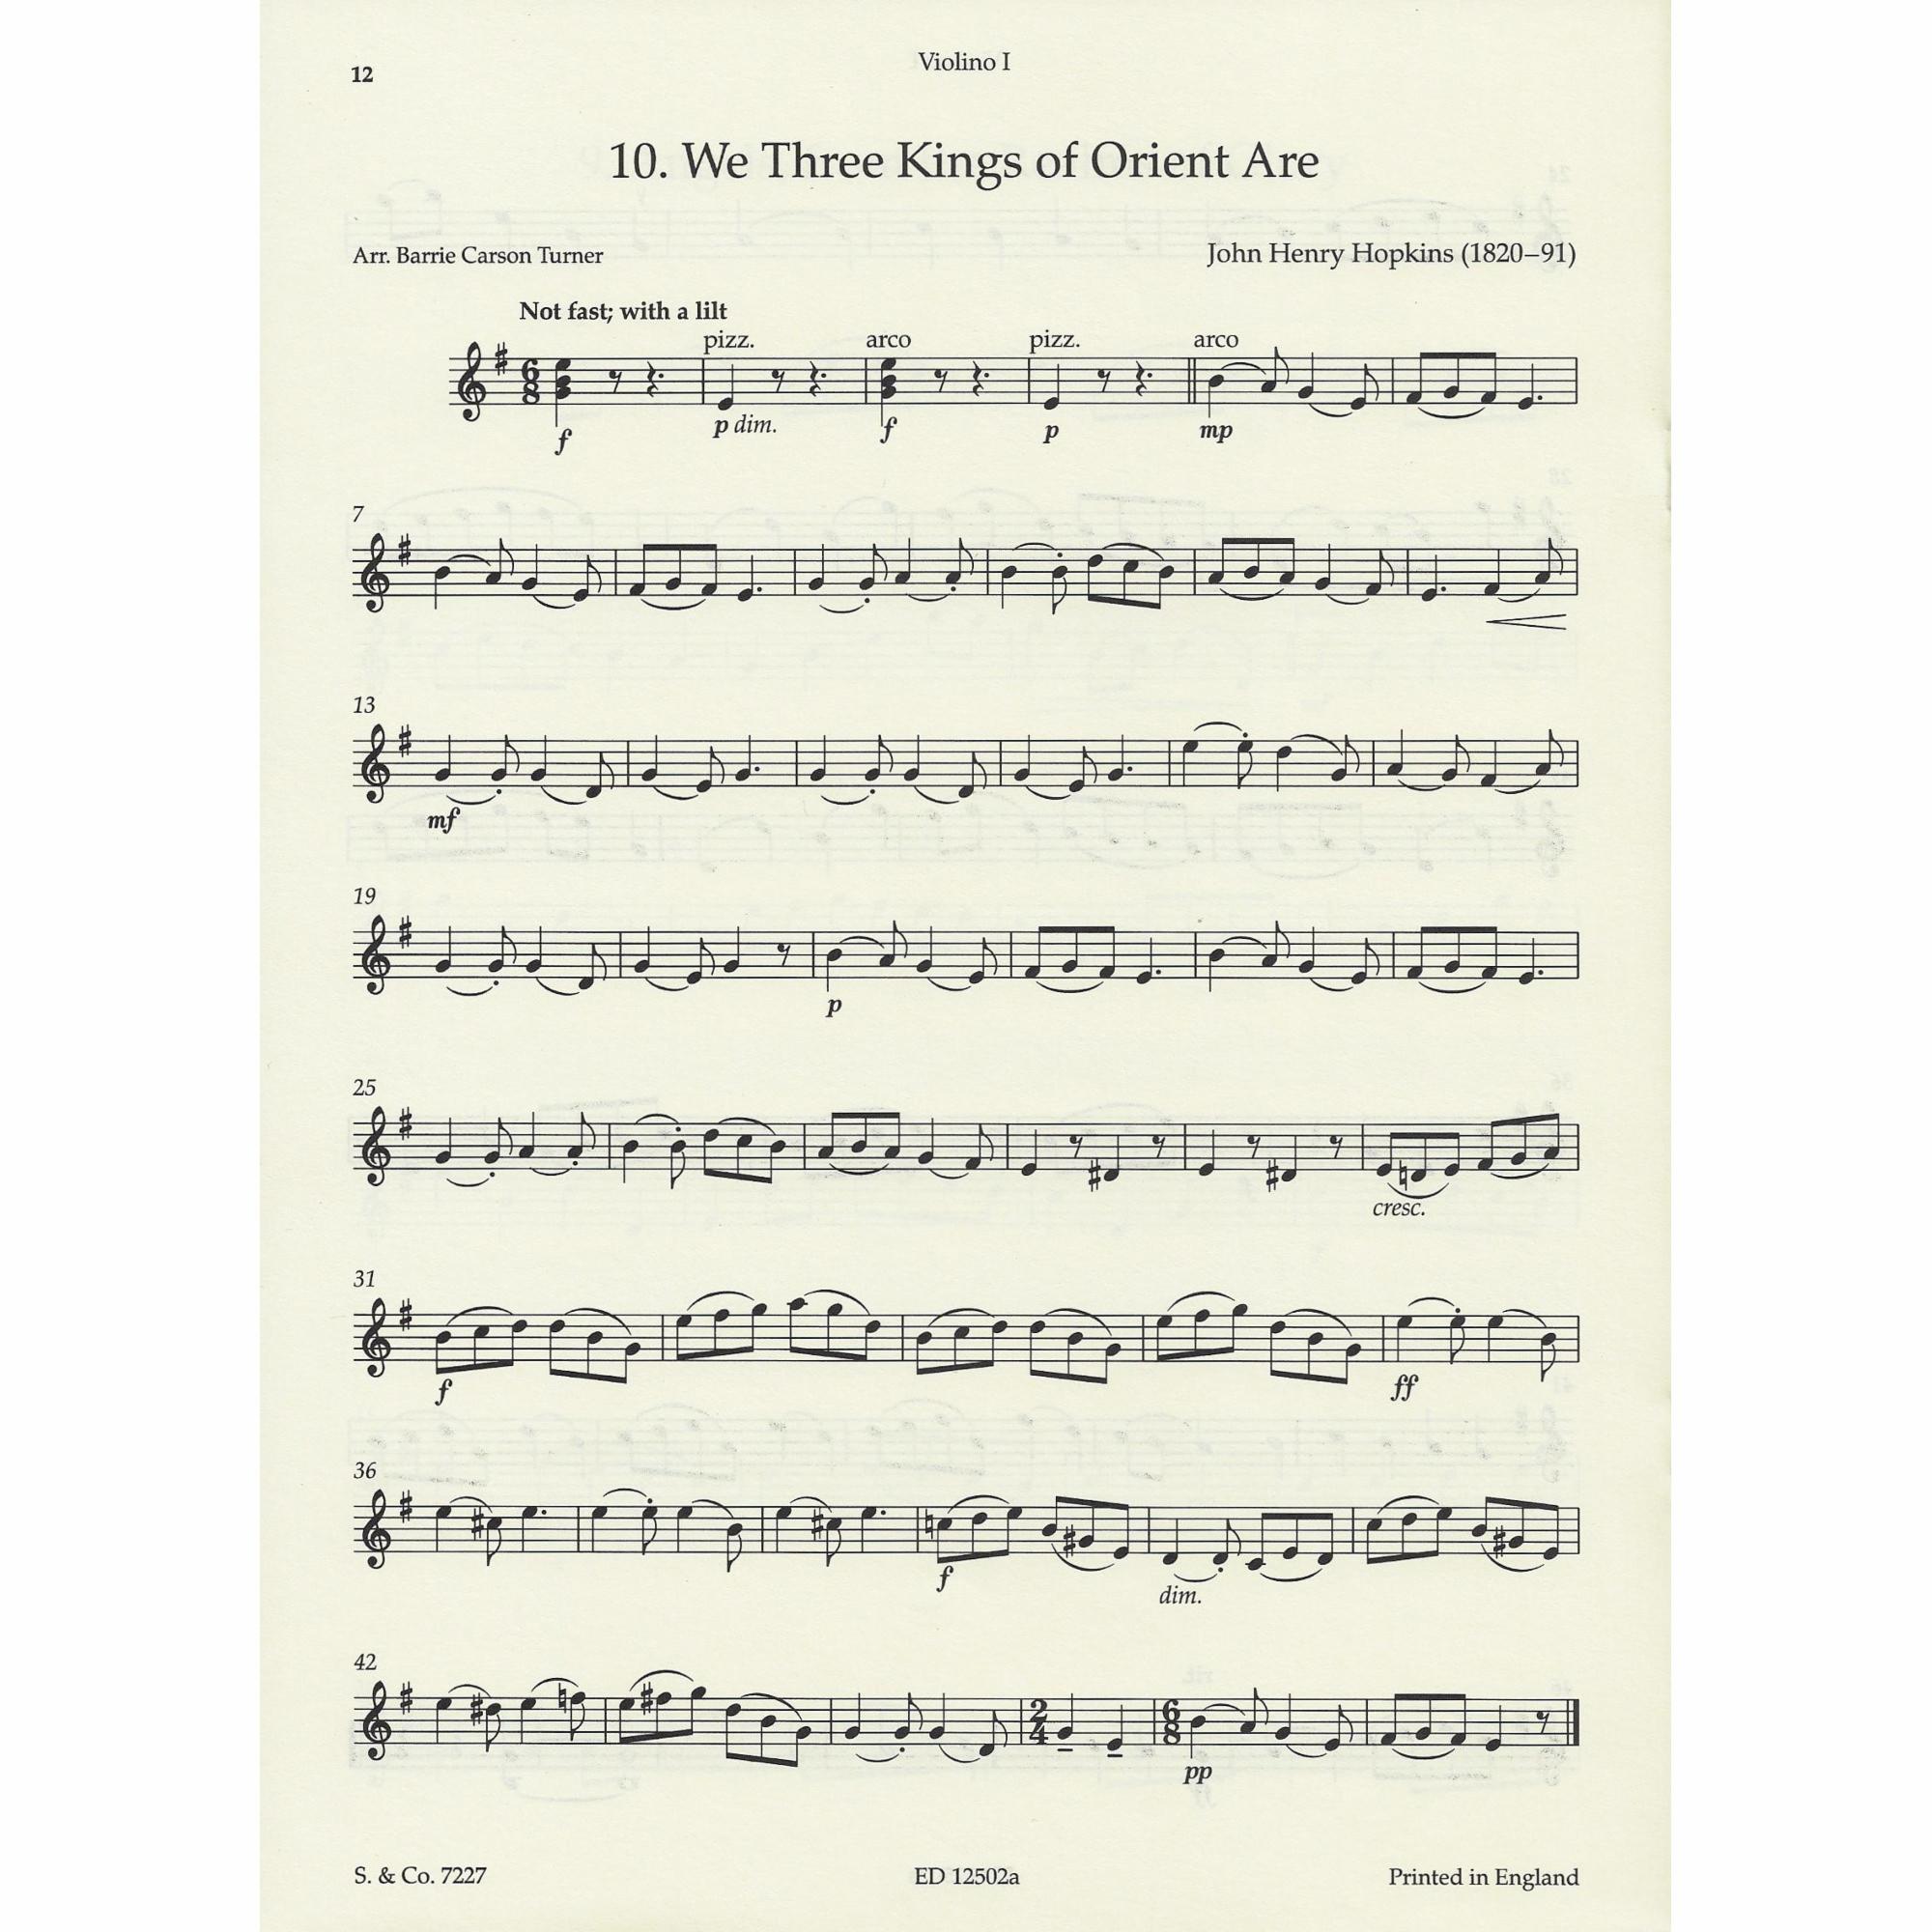 Sample: Violin I (Pg. 12)